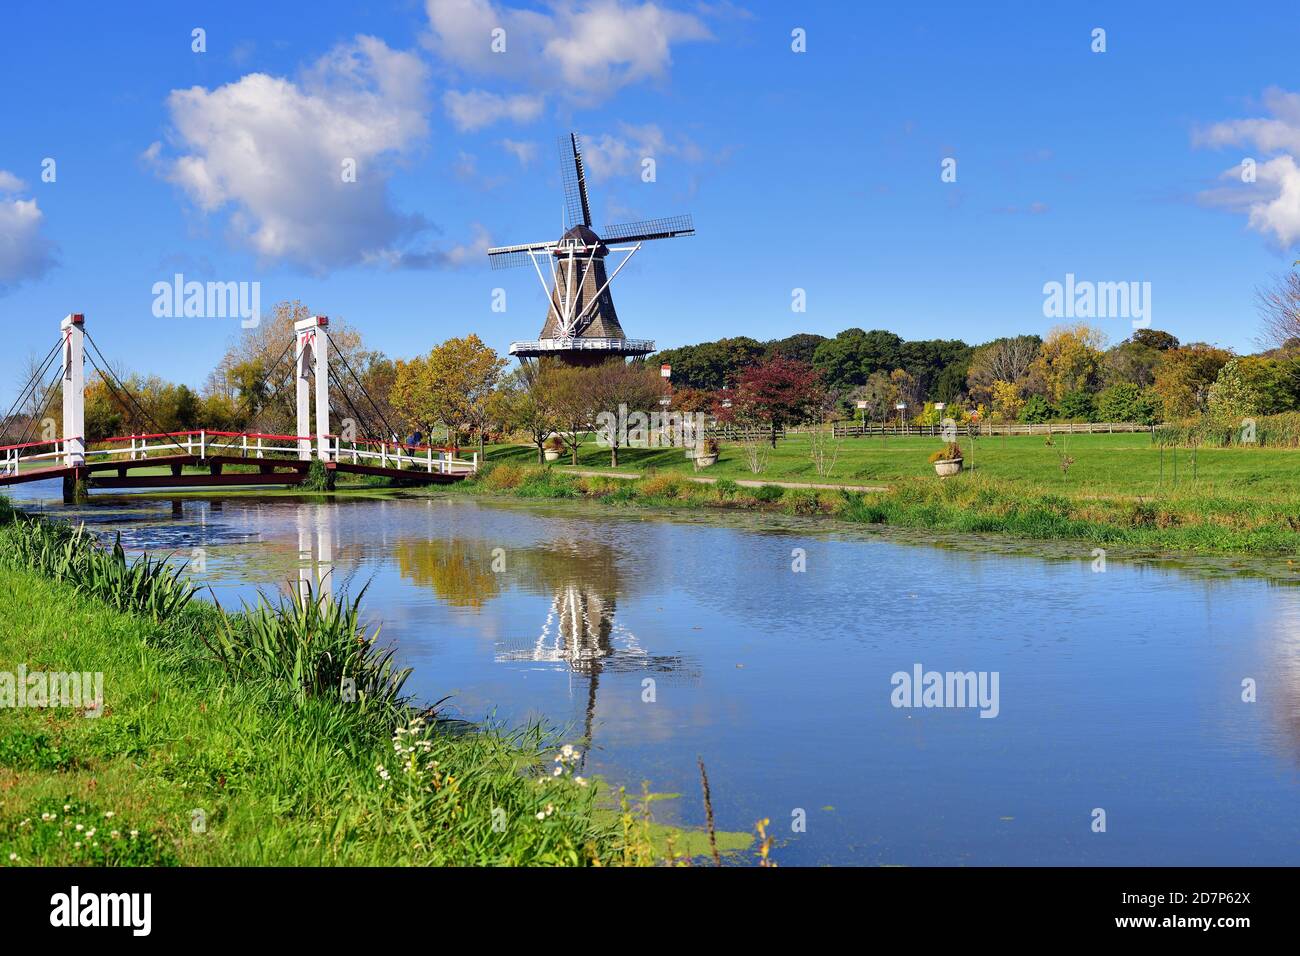 Holanda, Michigan, EE.UU. Windmill Island Gardens en Holanda, Michigan, está dedicado al patrimonio y la cultura holandesa. Foto de stock